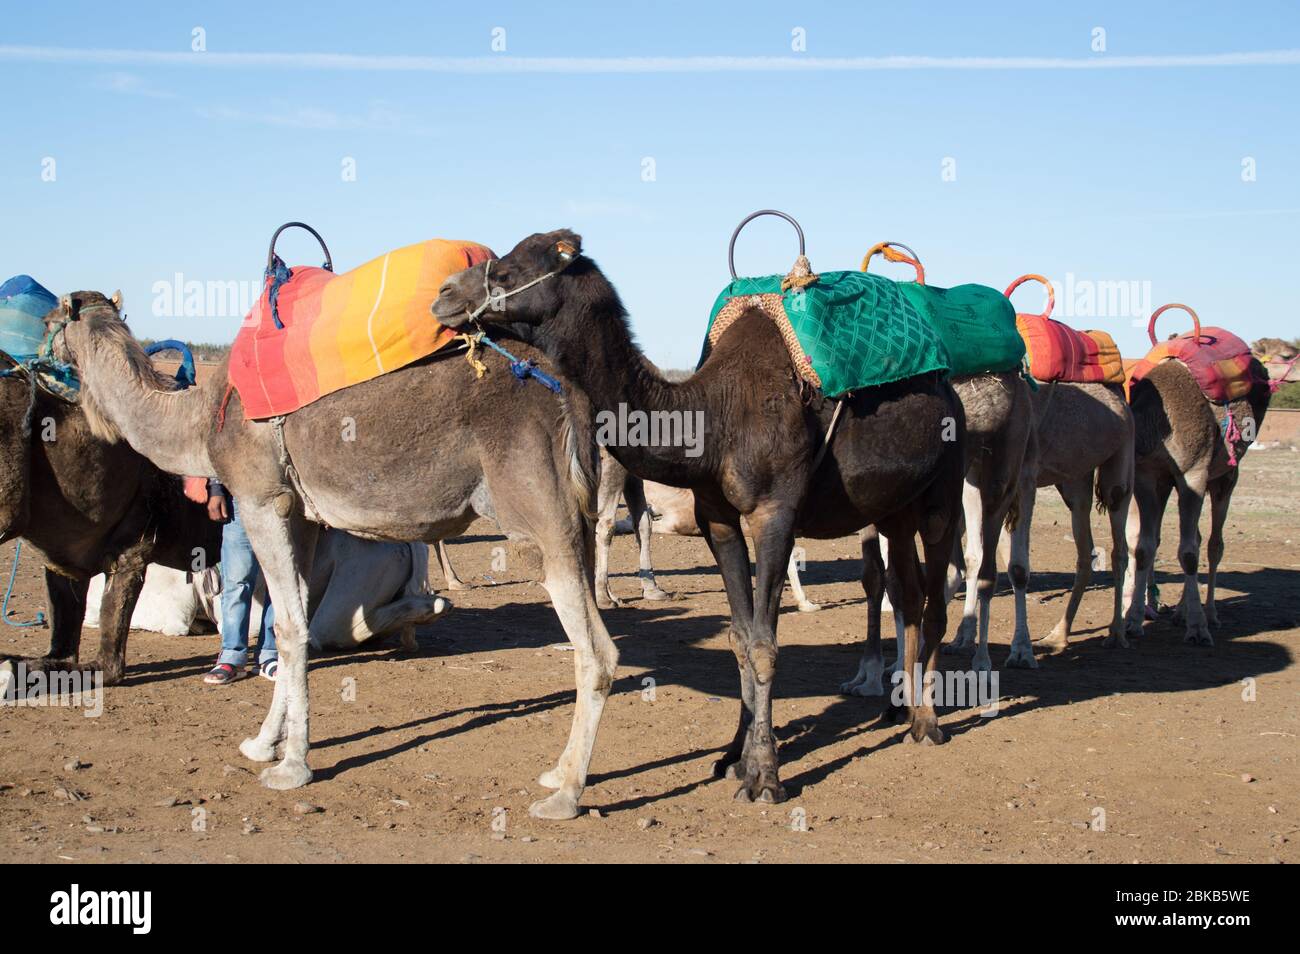 Dromadaires de chameaux avec coussin sur le dos se préparer pour les manèges touristiques à Marrakech, Maroc, Afrique du Nord Banque D'Images